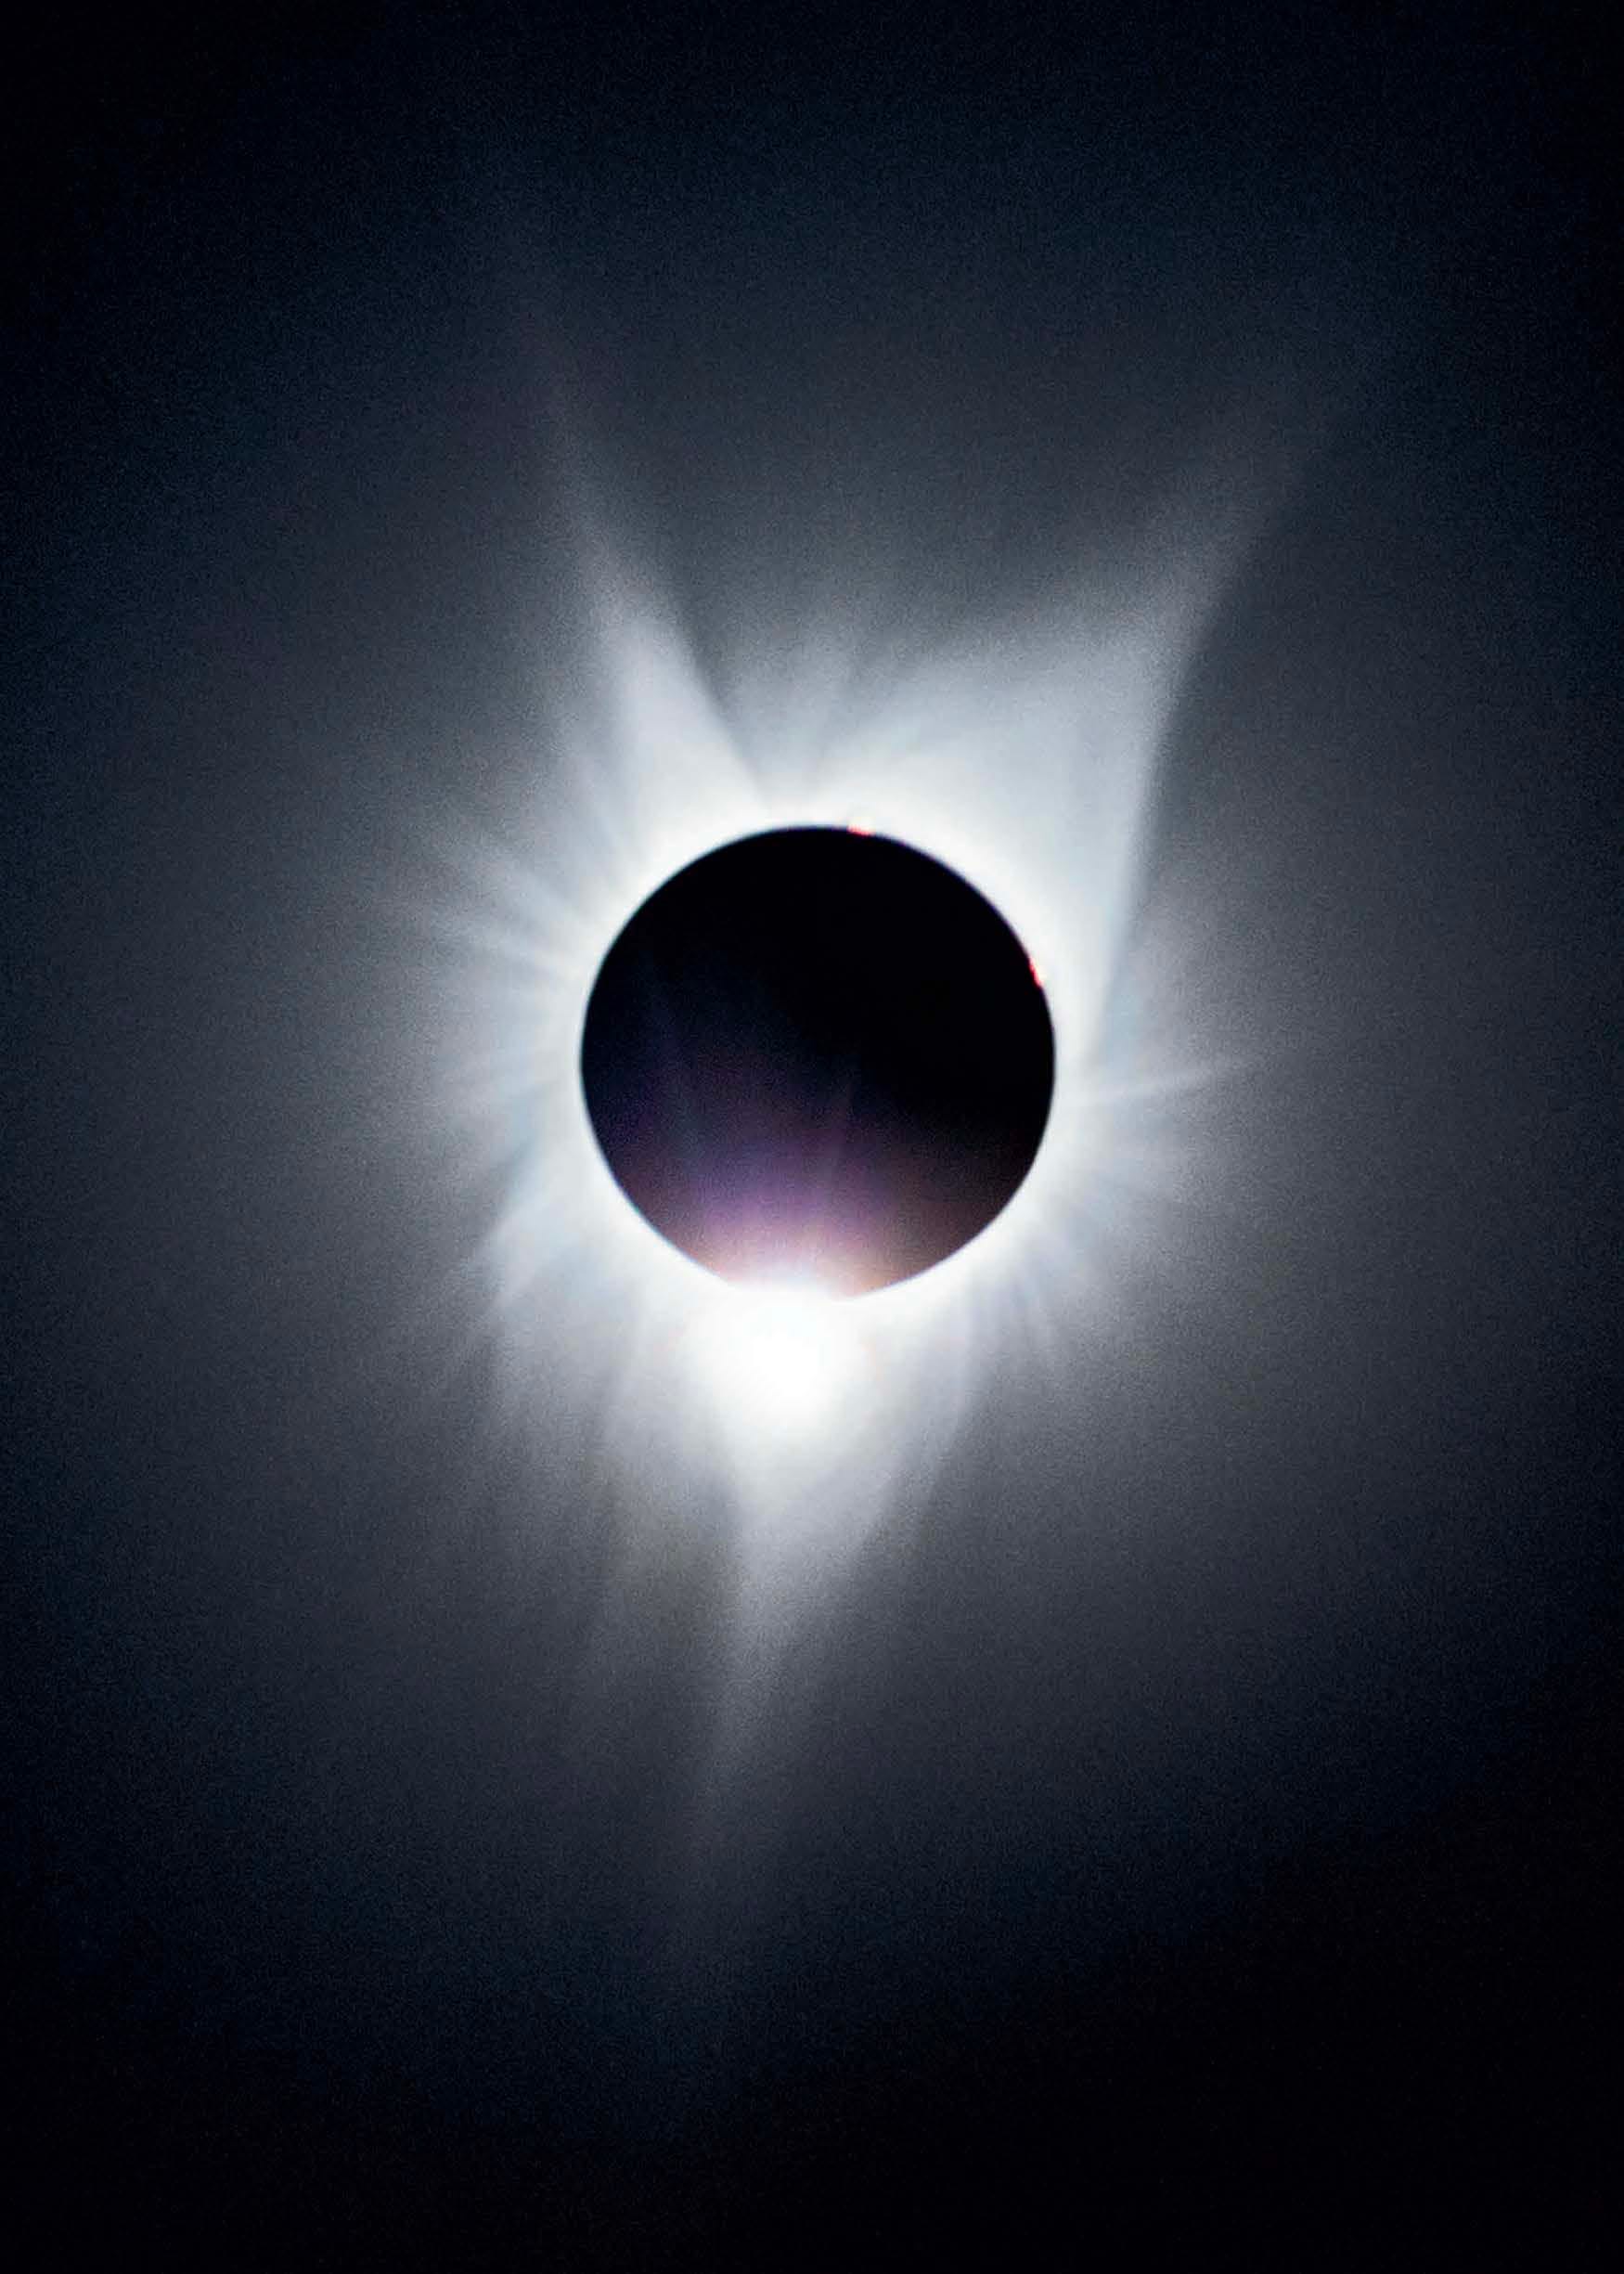 Eine totale Sonnenfinsternis mit dem Mond als schwarzem Kreis über der Sonne.